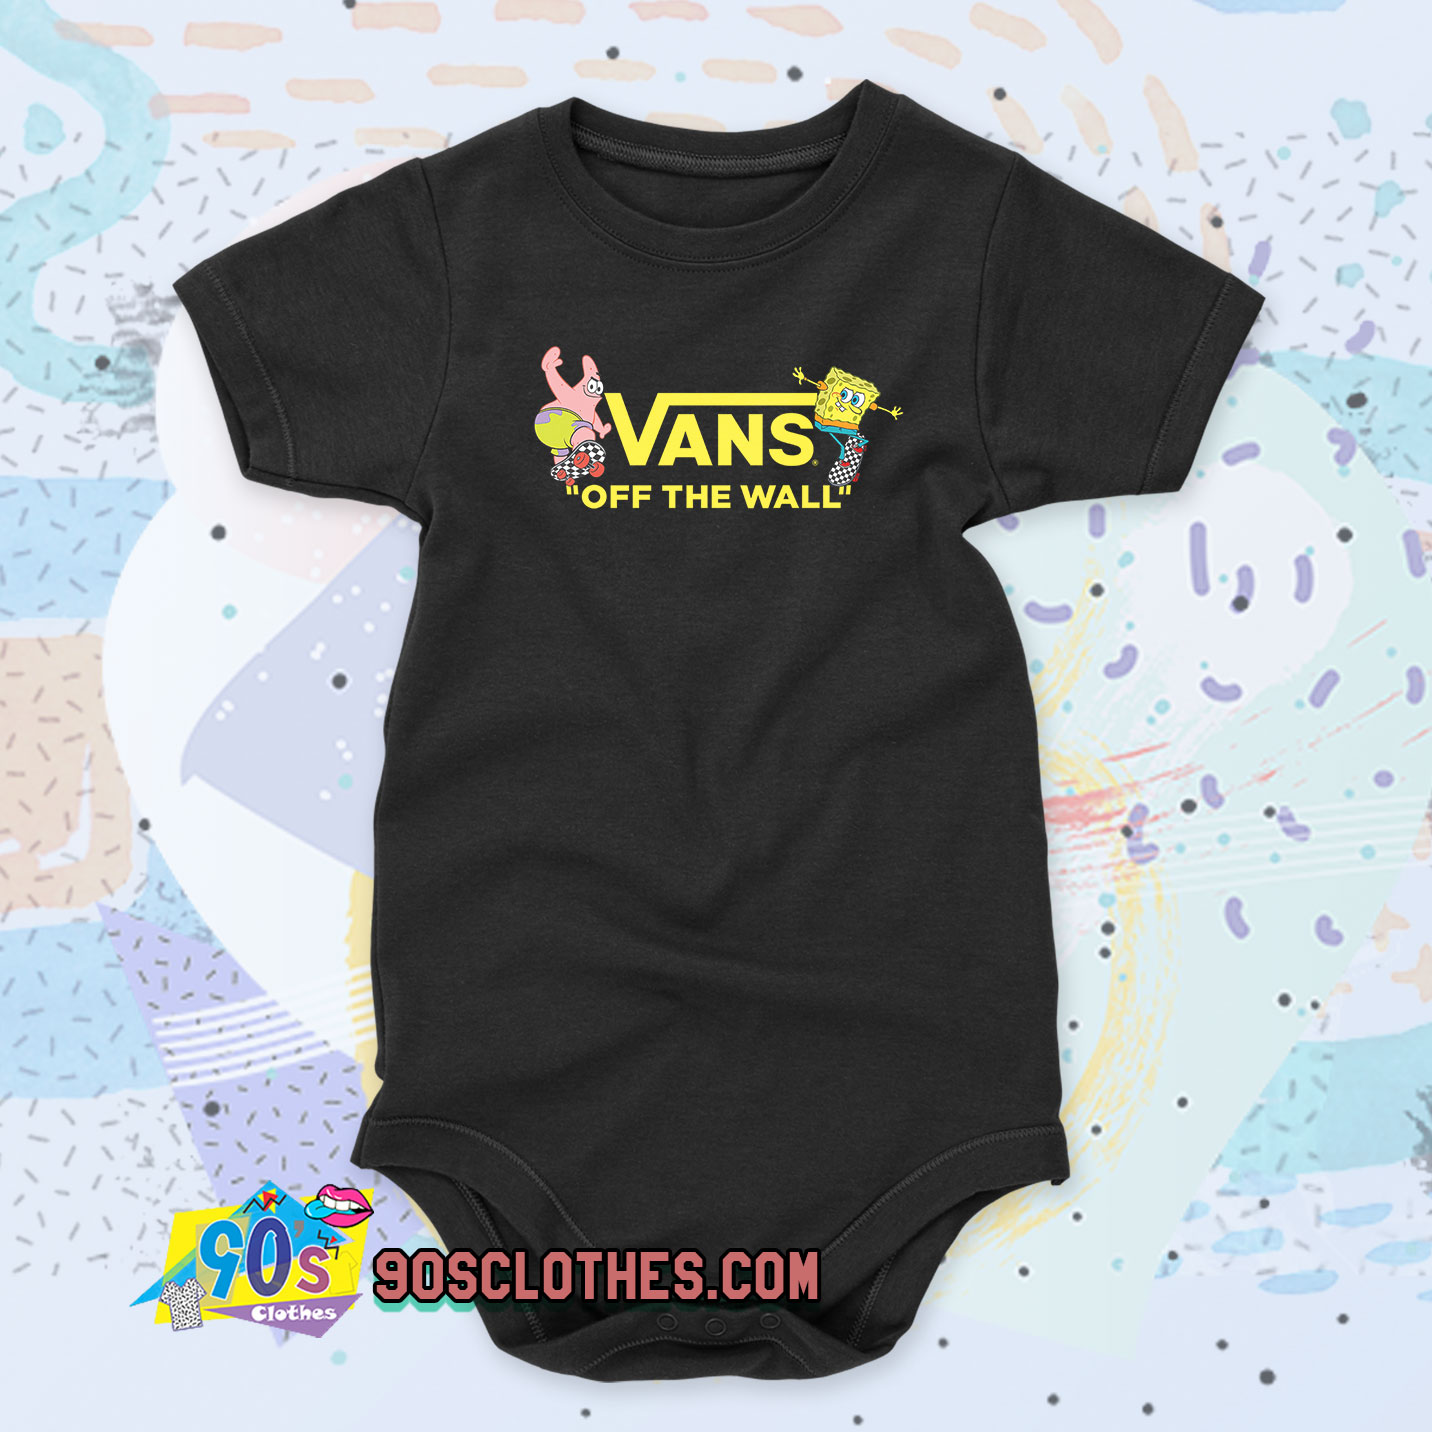 vans newborn clothes